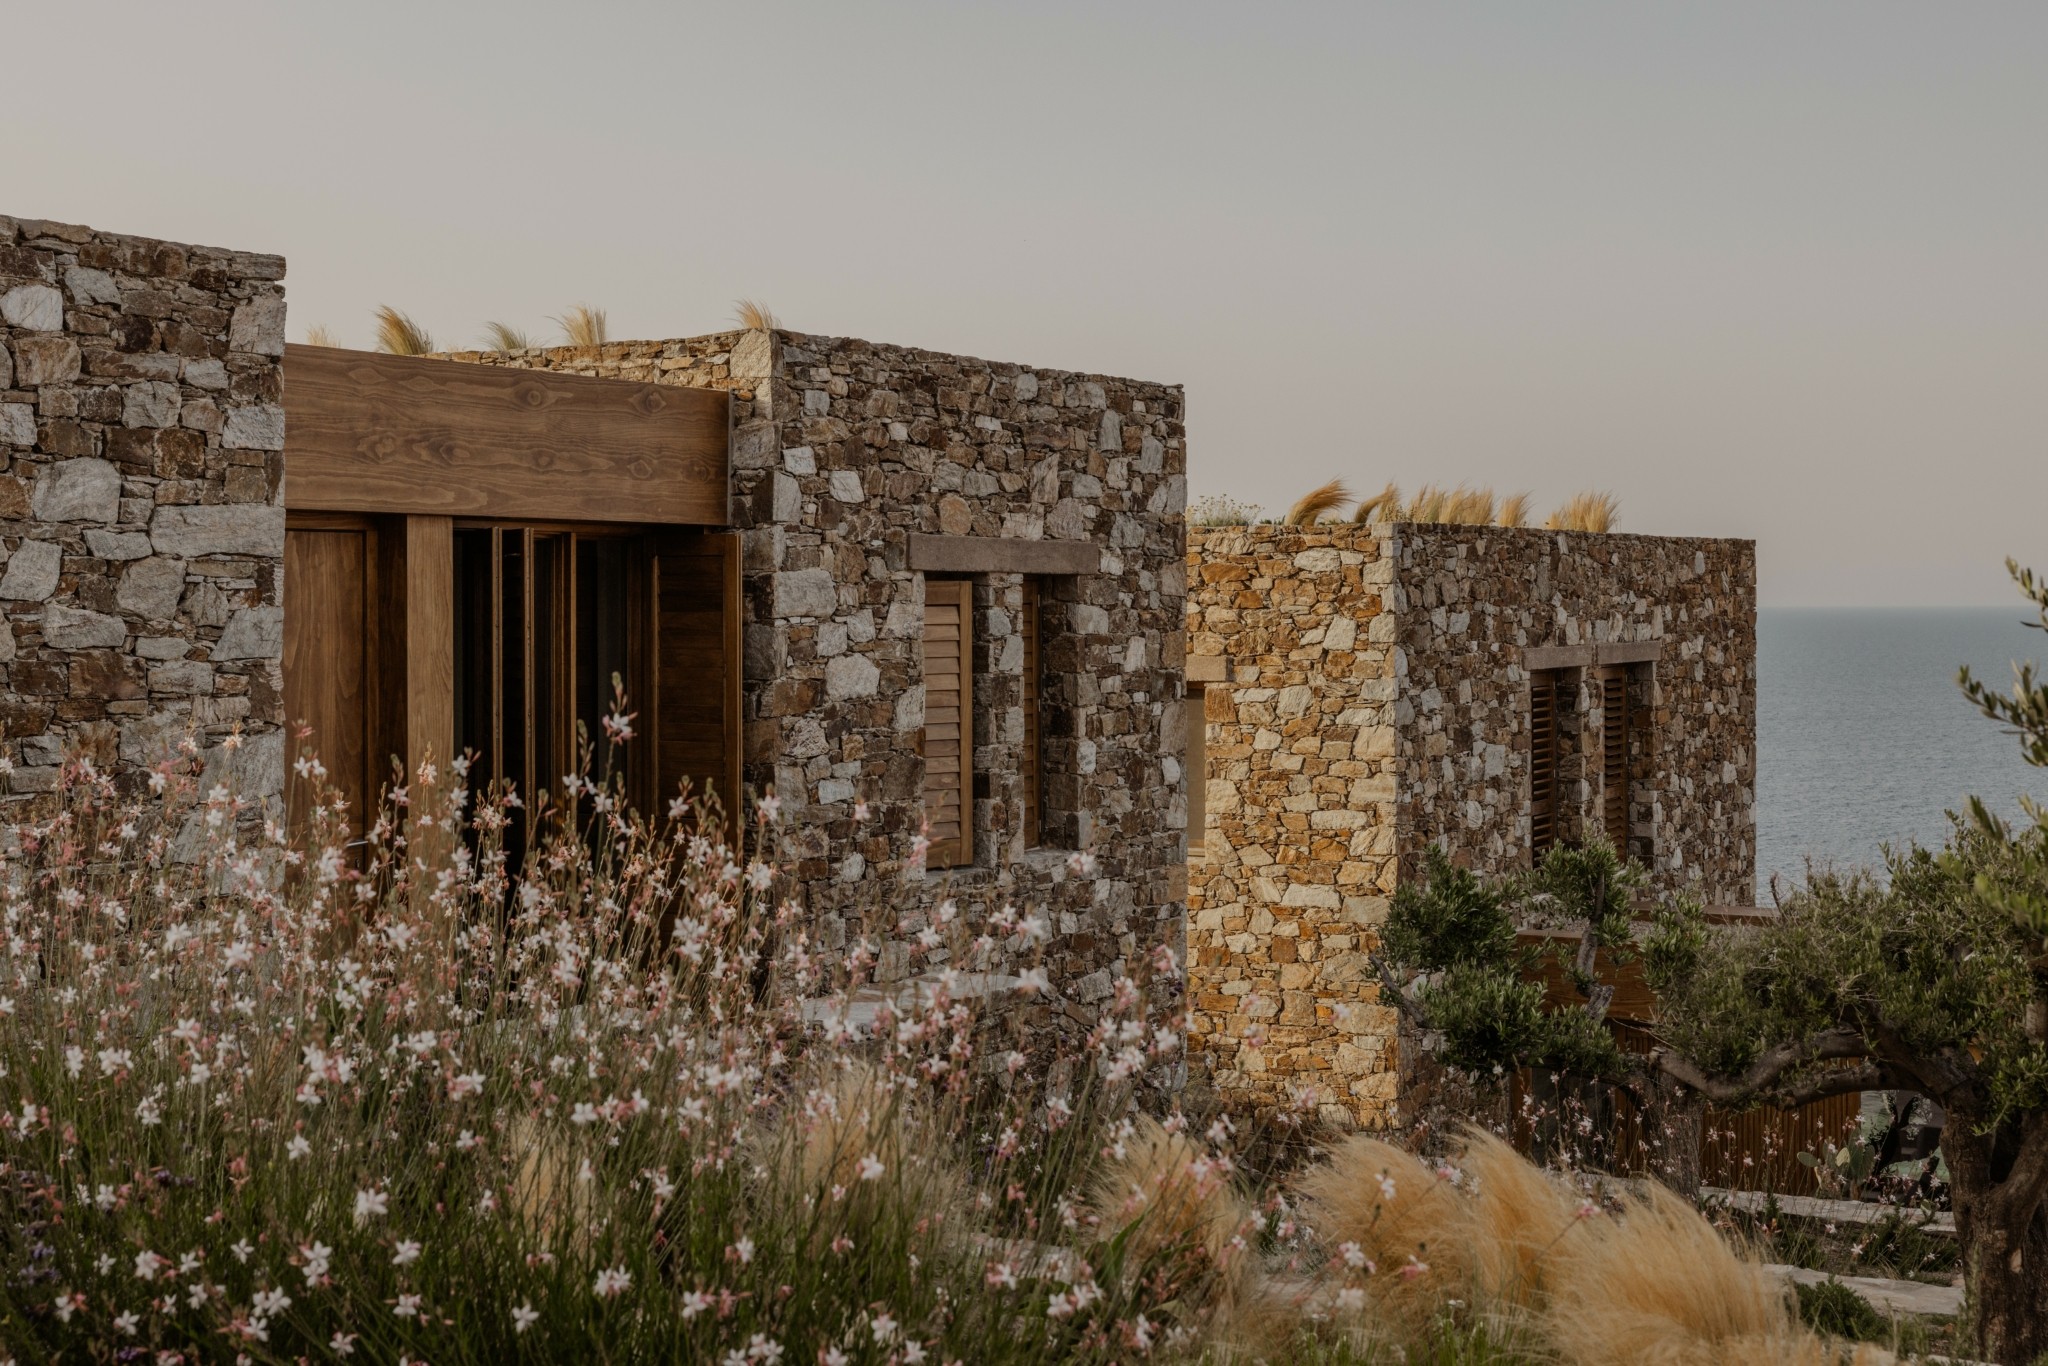 Η ιστορία πίσω από τη νέα κατοικία που θυμίζει μικροσκοπικό χωριό σε ένα μαγευτικό σημείο της Σύρου